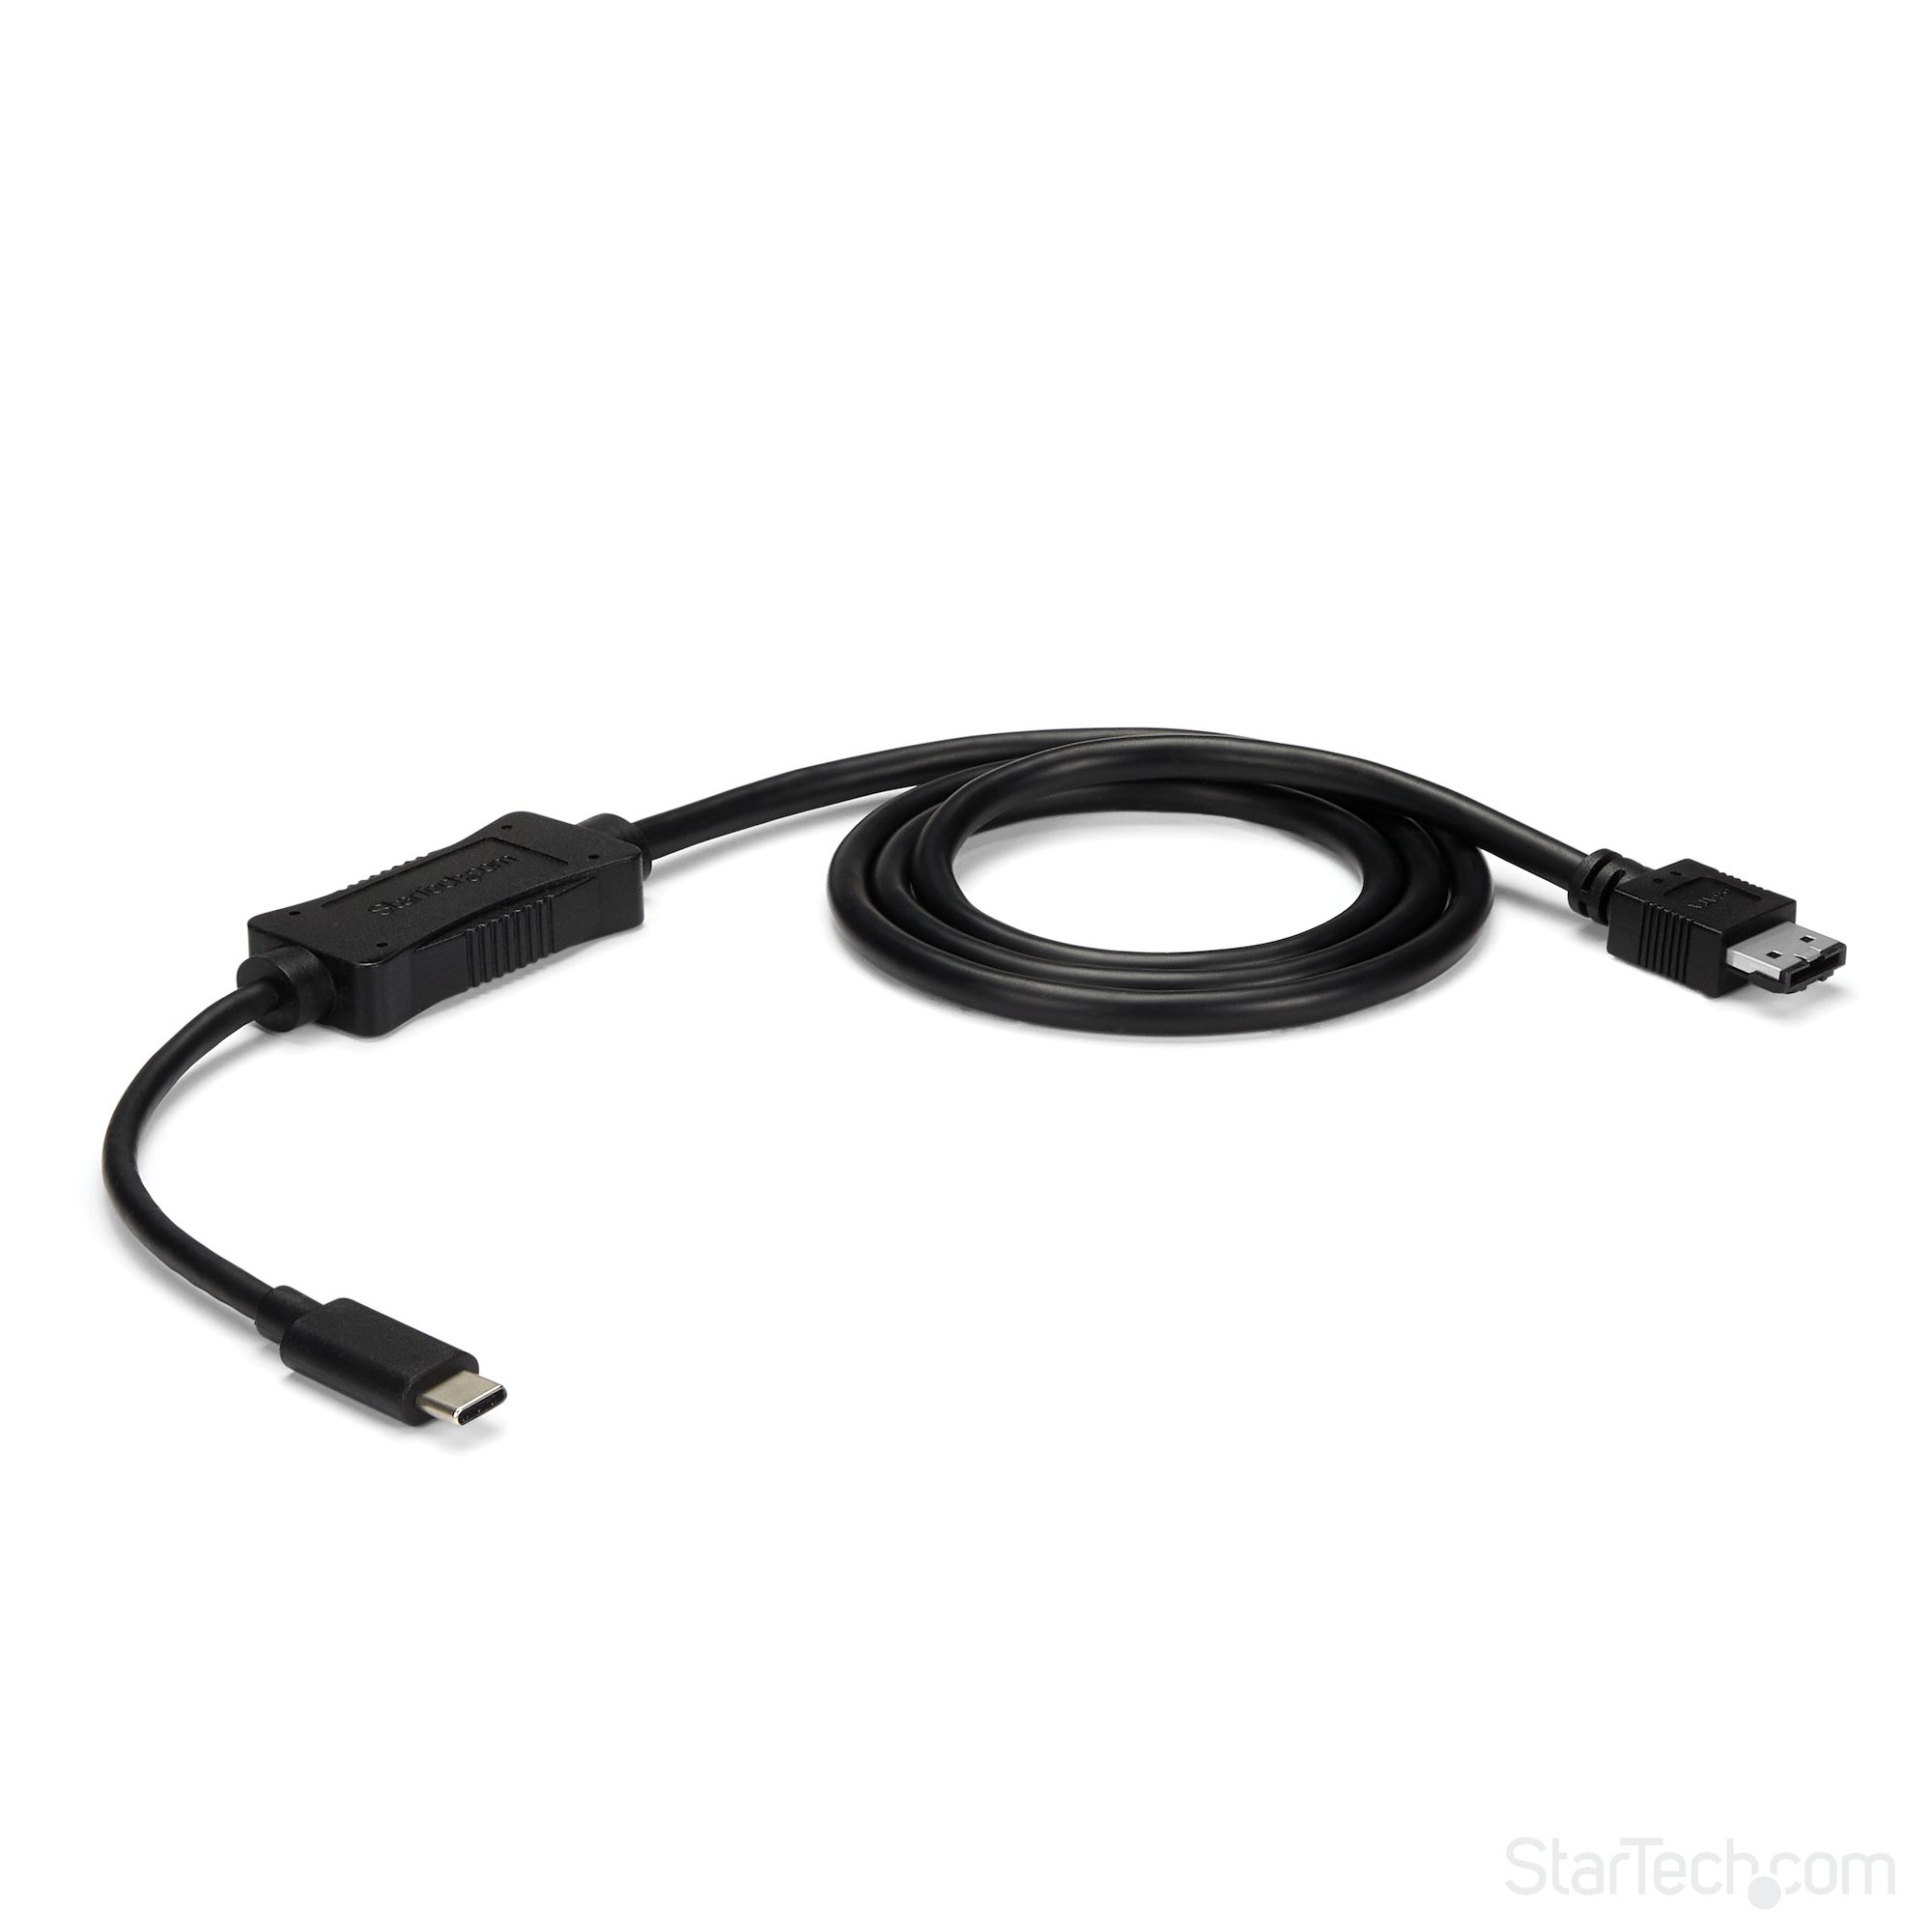 Adaptateur Ethernet USB C - 0,25 mètre - Adaptateur USB C vers